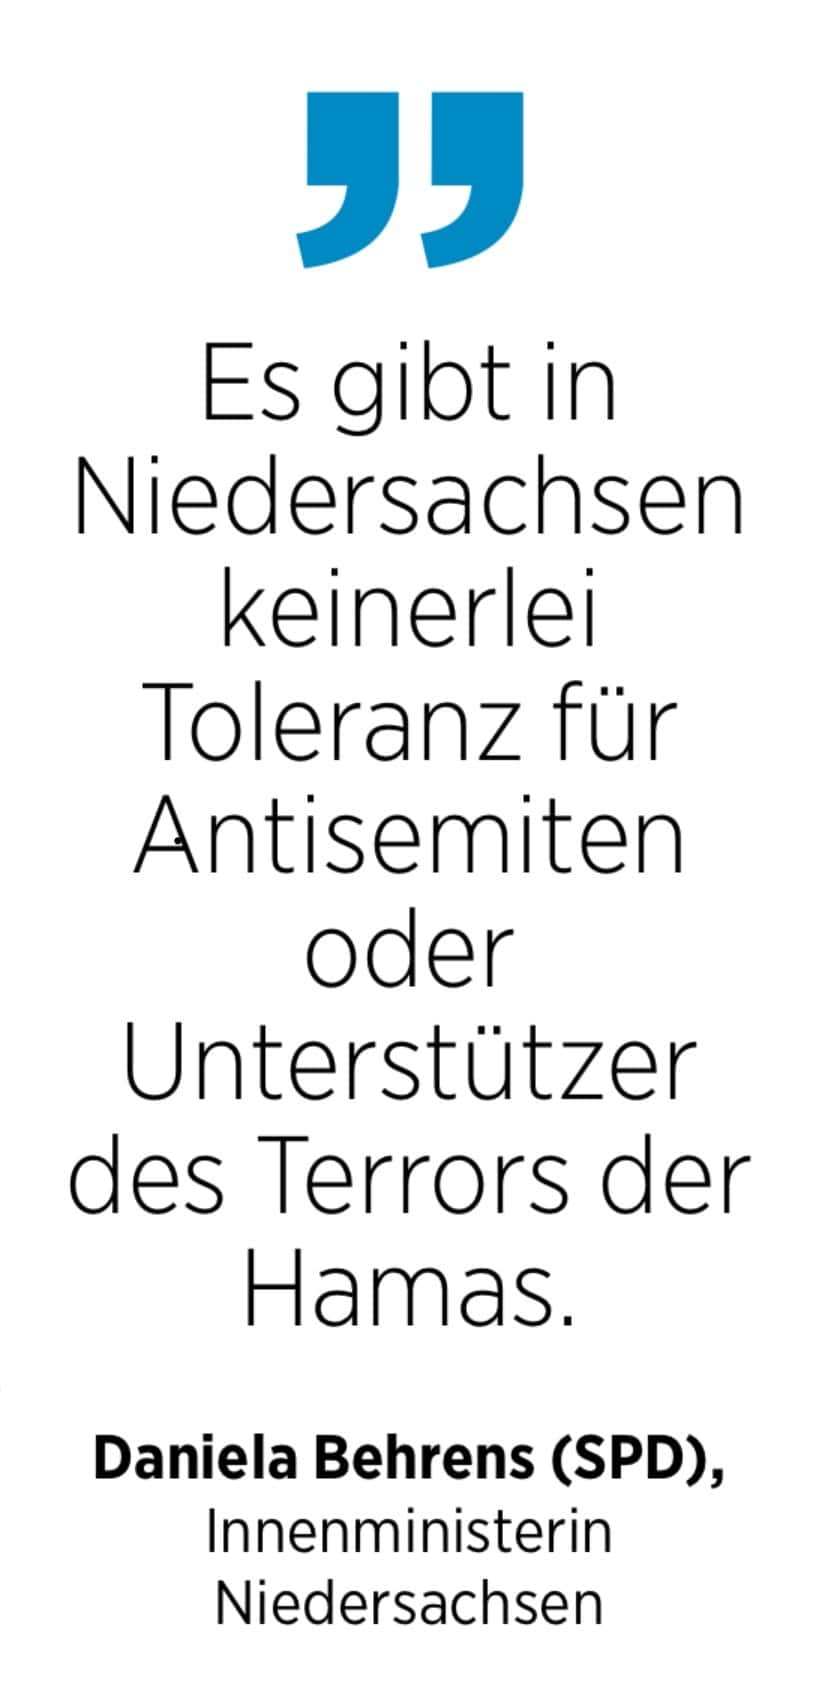 Daniela Behrens (SPD), Innenministerin Niedeesachsen: Es gibt in Niedersachsen keinerlei Toleranz für Antisemiten oder Unterstützer des Terrors der Hamas.